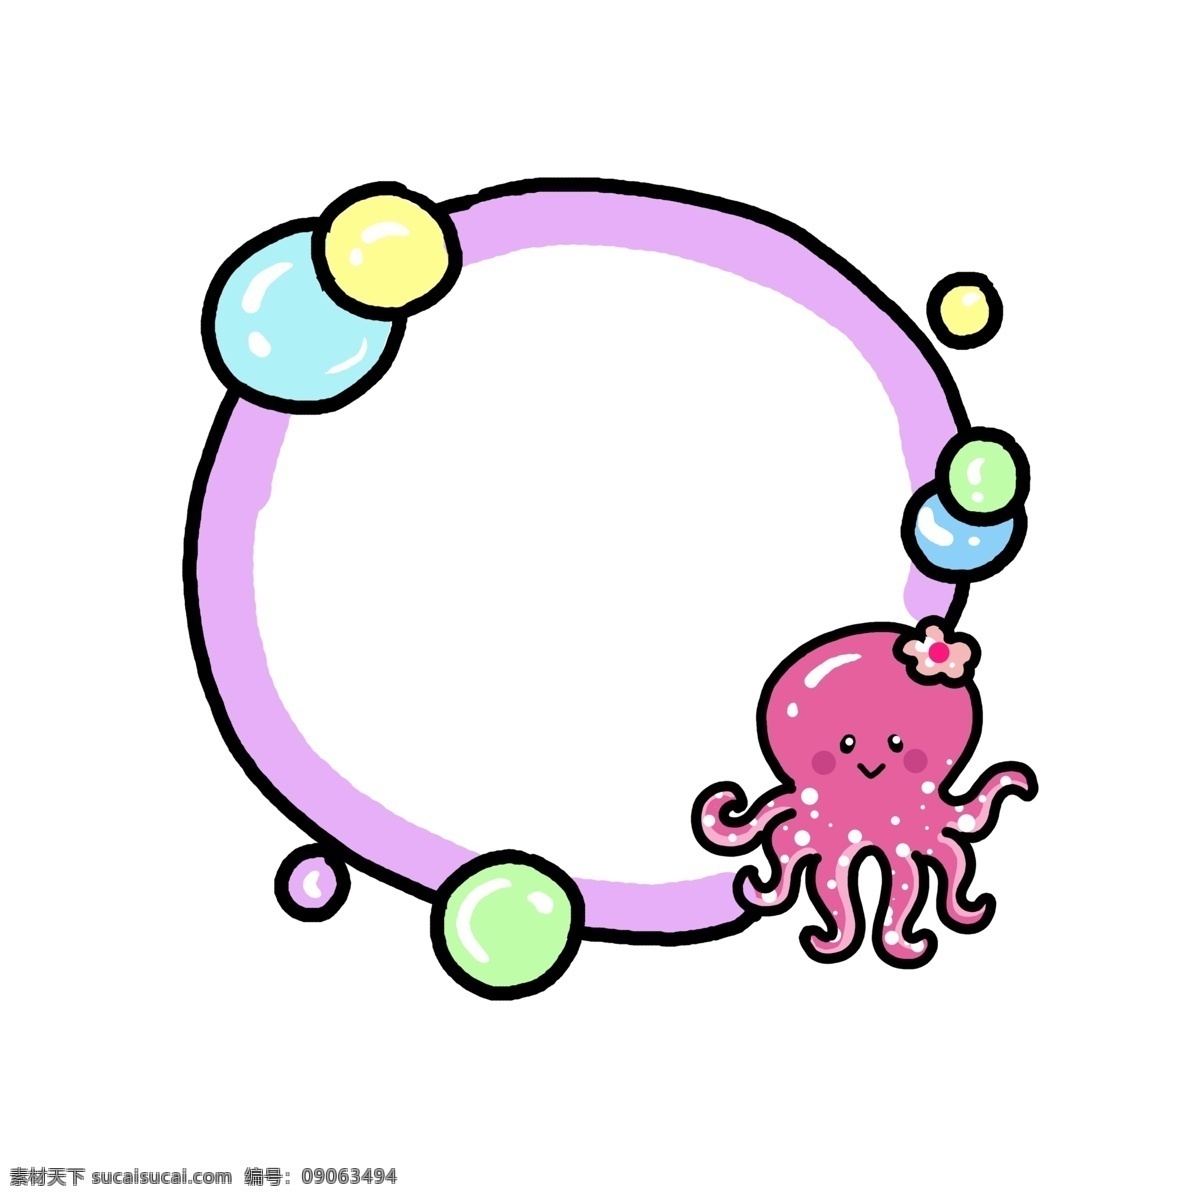 手绘 动物 章鱼 边框 粉色的章鱼 圆形的边框 漂亮的边框 卡通边框 手绘动物边框 创意章鱼边框